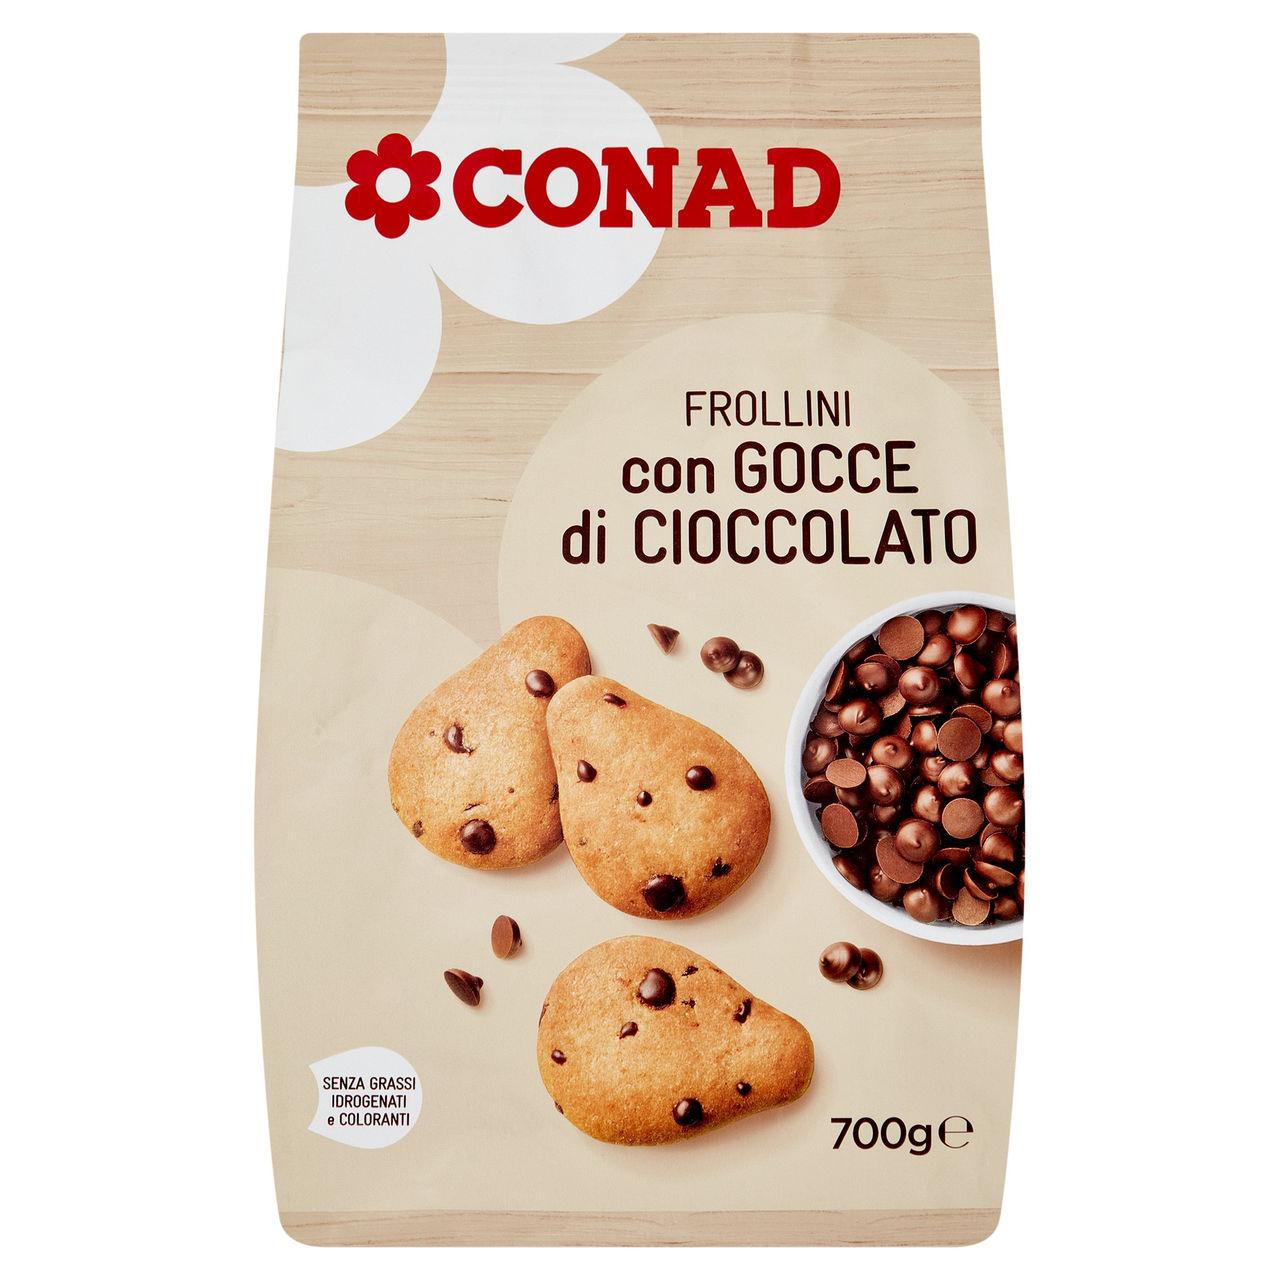 Frollini con Gocce di Cioccolato 700g Conad online